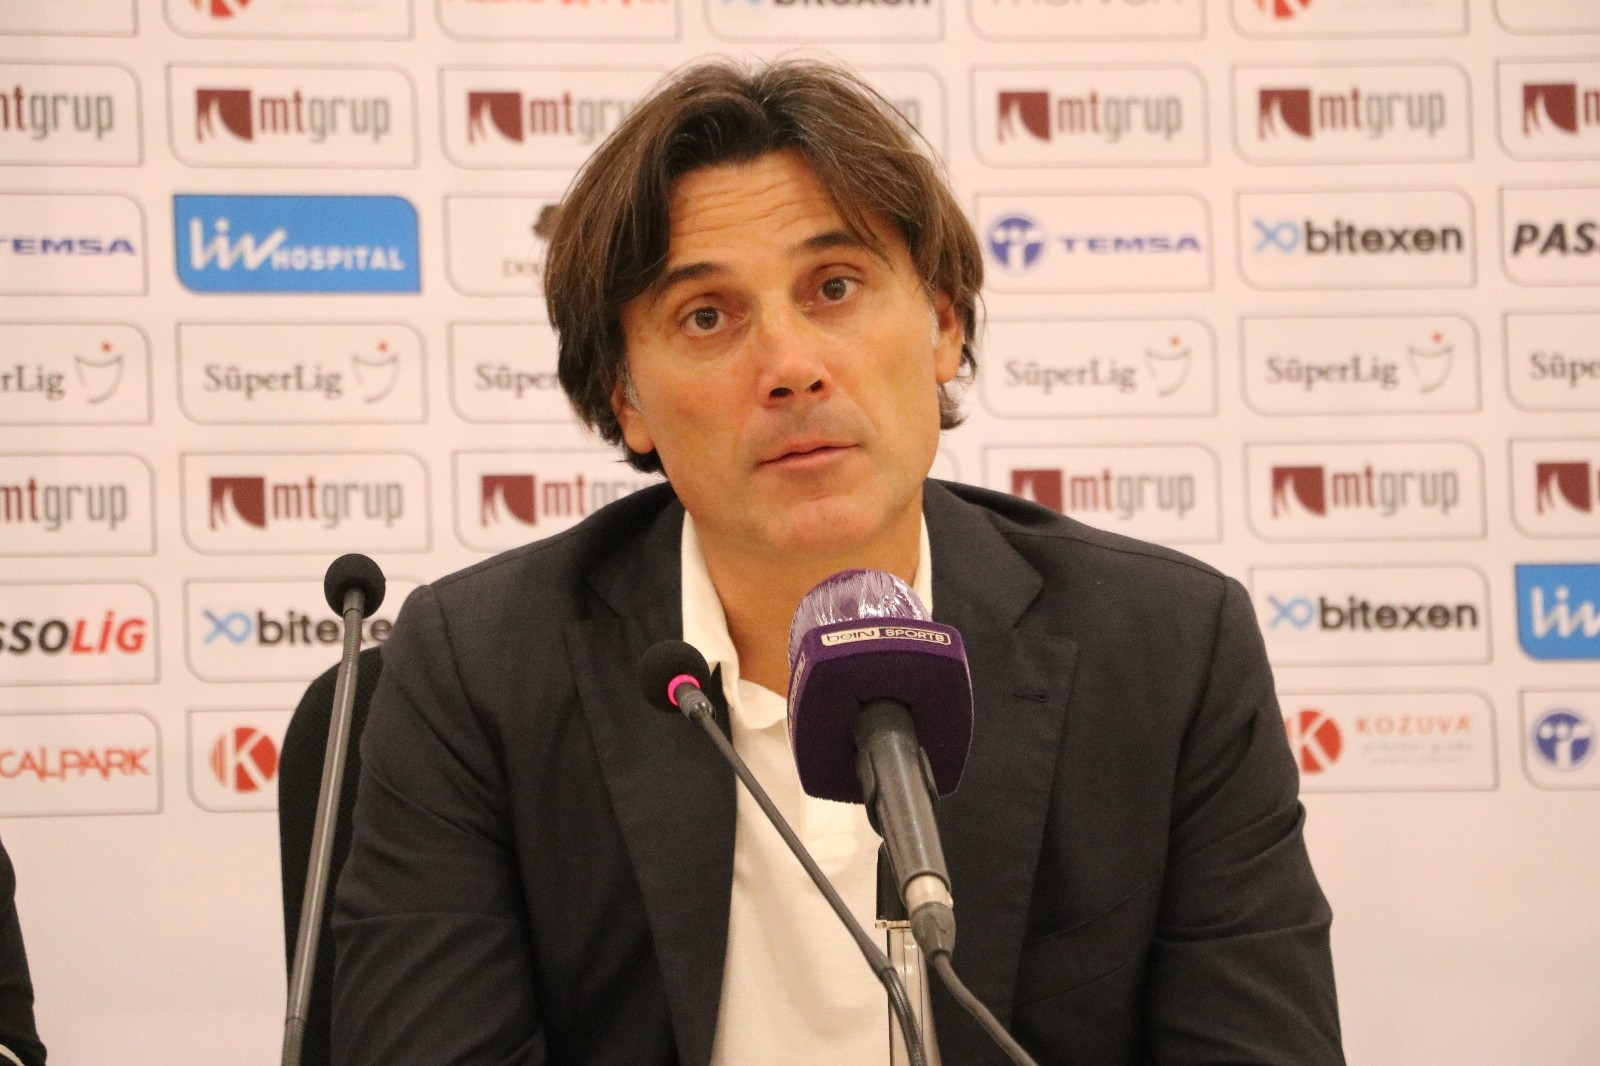 Vincenzo Montella: “Daha fazla gol atabilirdik”